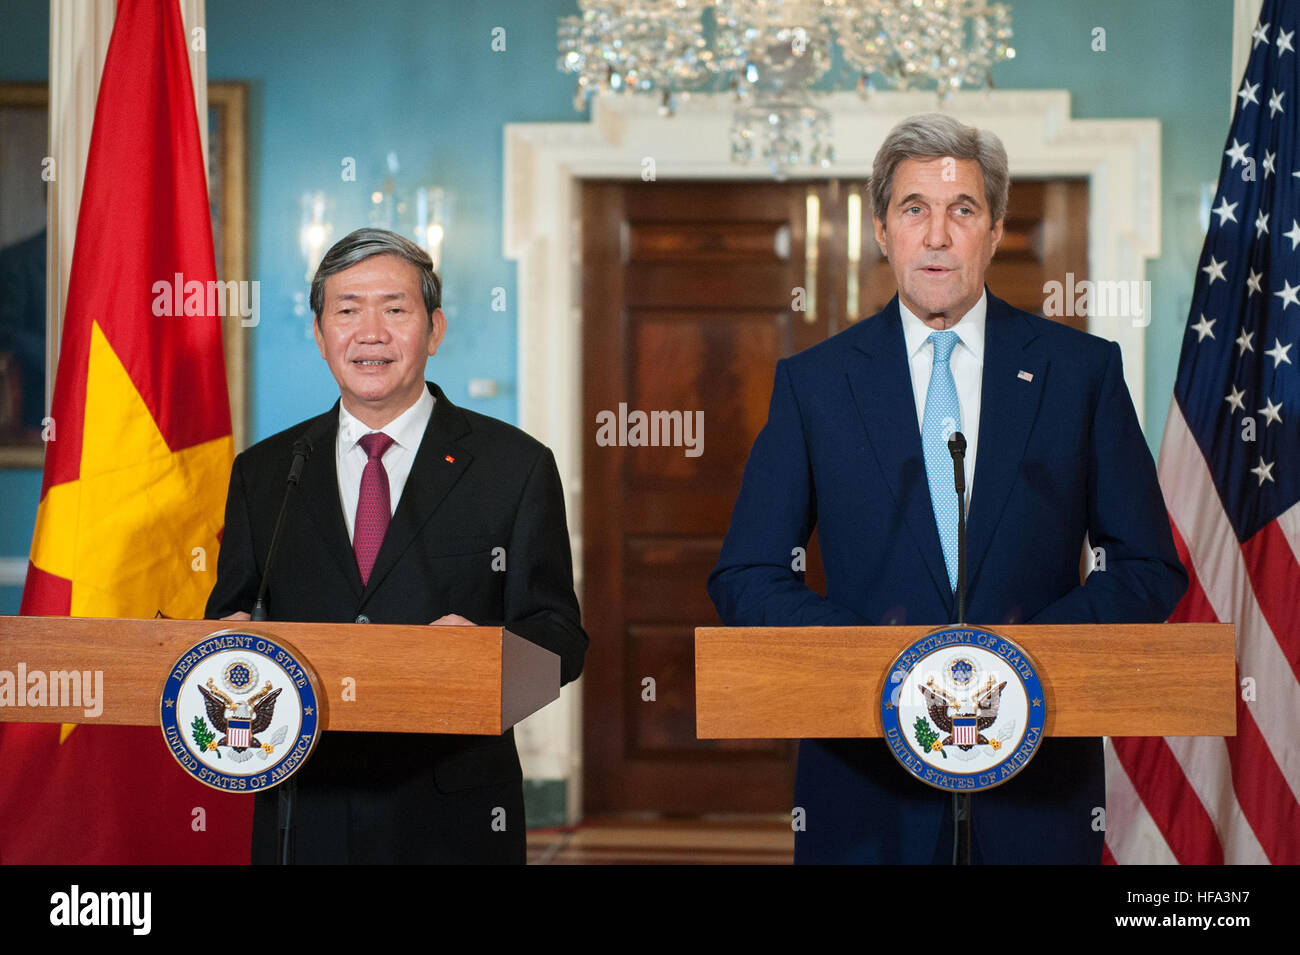 Le secrétaire d'Etat John Kerry et le Secrétaire exécutif vietnamien Dinh l'adresse Huynh les journalistes lors d'une conférence de presse conjointe du Département d'État à Washington, D.C., le 25 octobre 2016 Banque D'Images